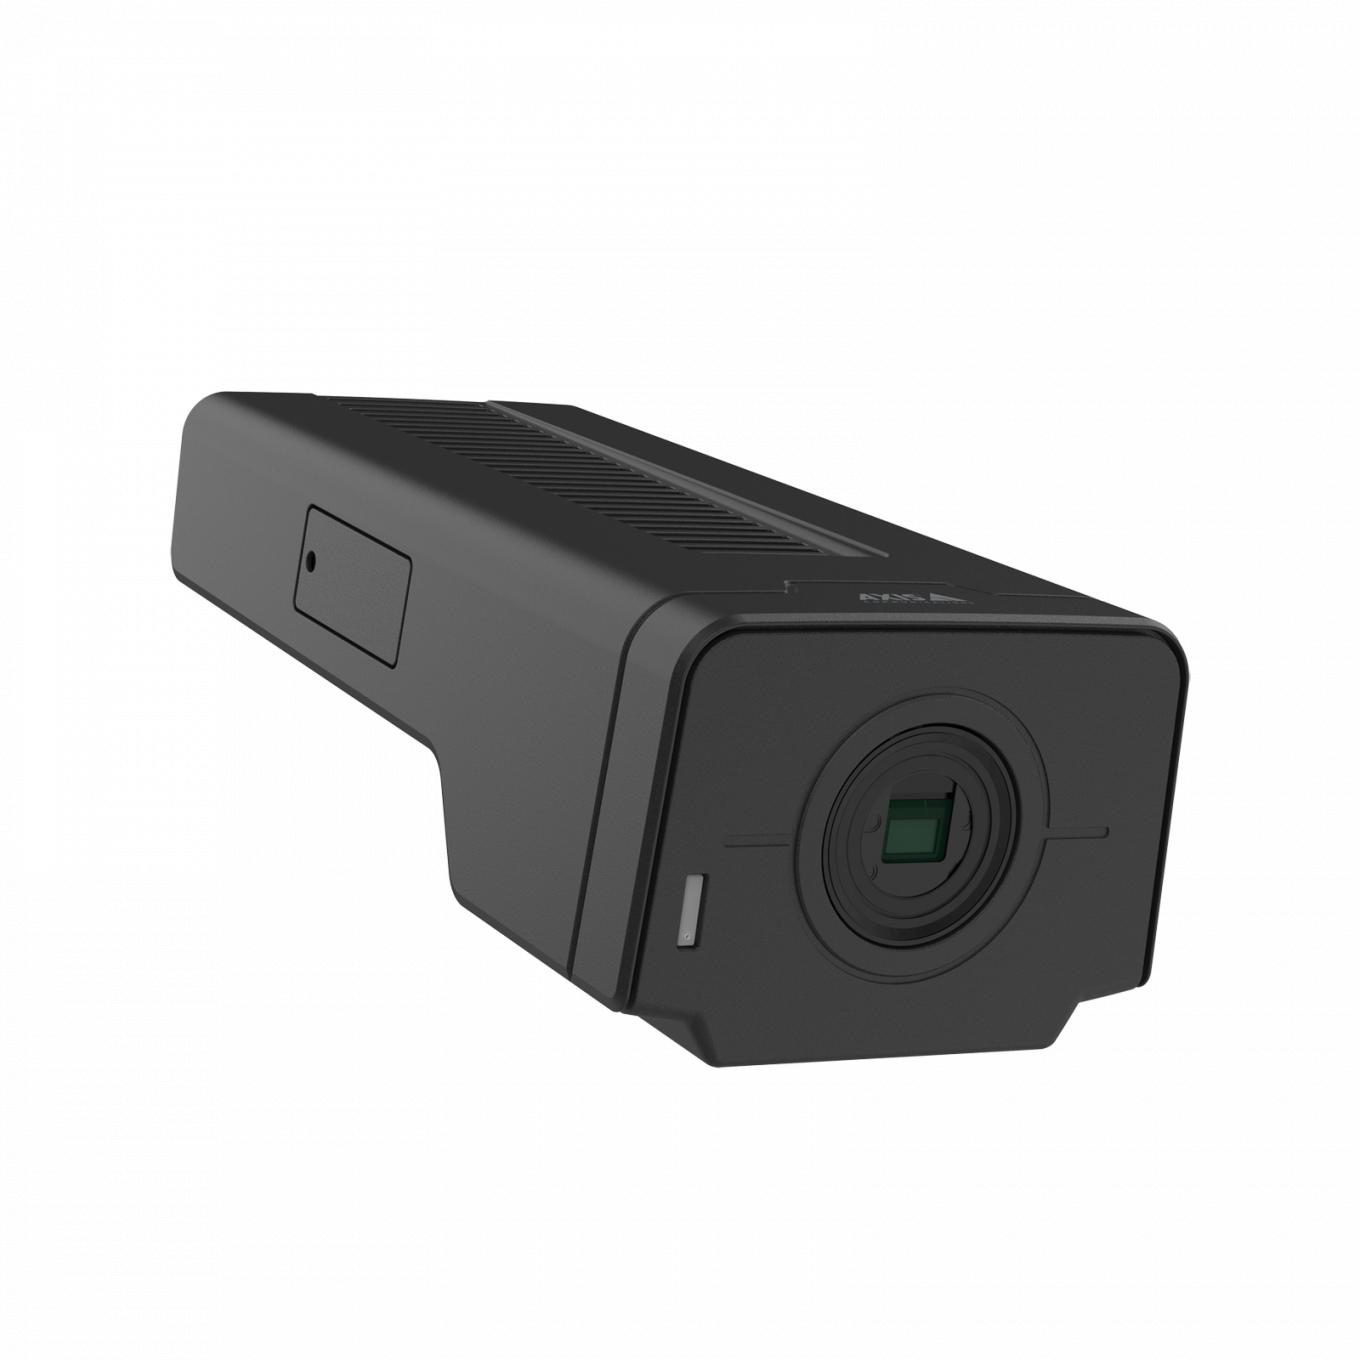 即納/在庫有り 02164-031 AXIS Q1656-B 固定ネットワークカメラ プロによるサポート付き 防犯カメラ 